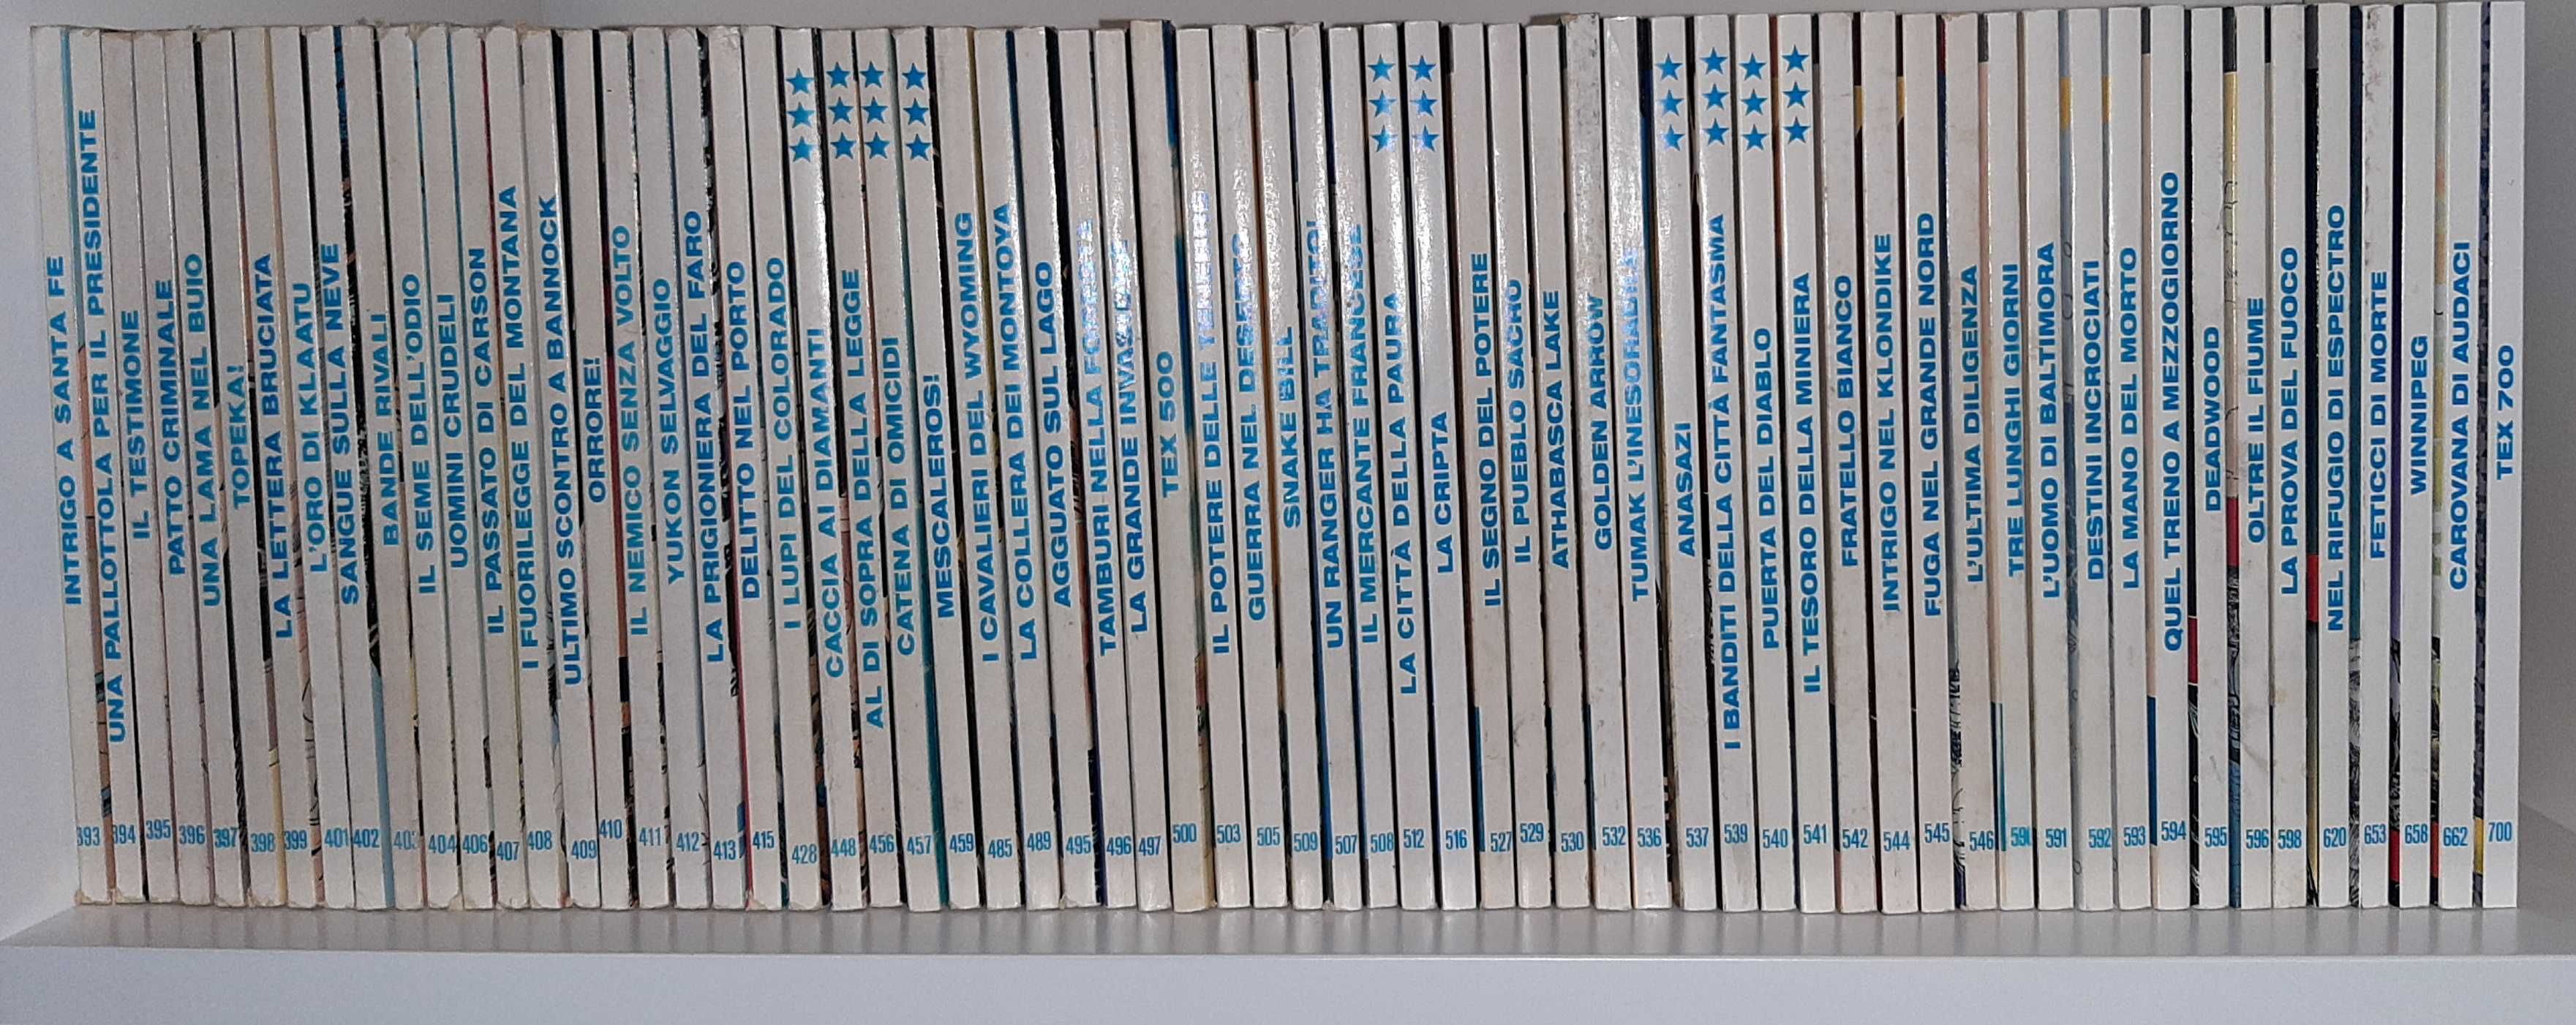 Lote Tex Willer, BD original em italiano. 134 álbuns da série regular